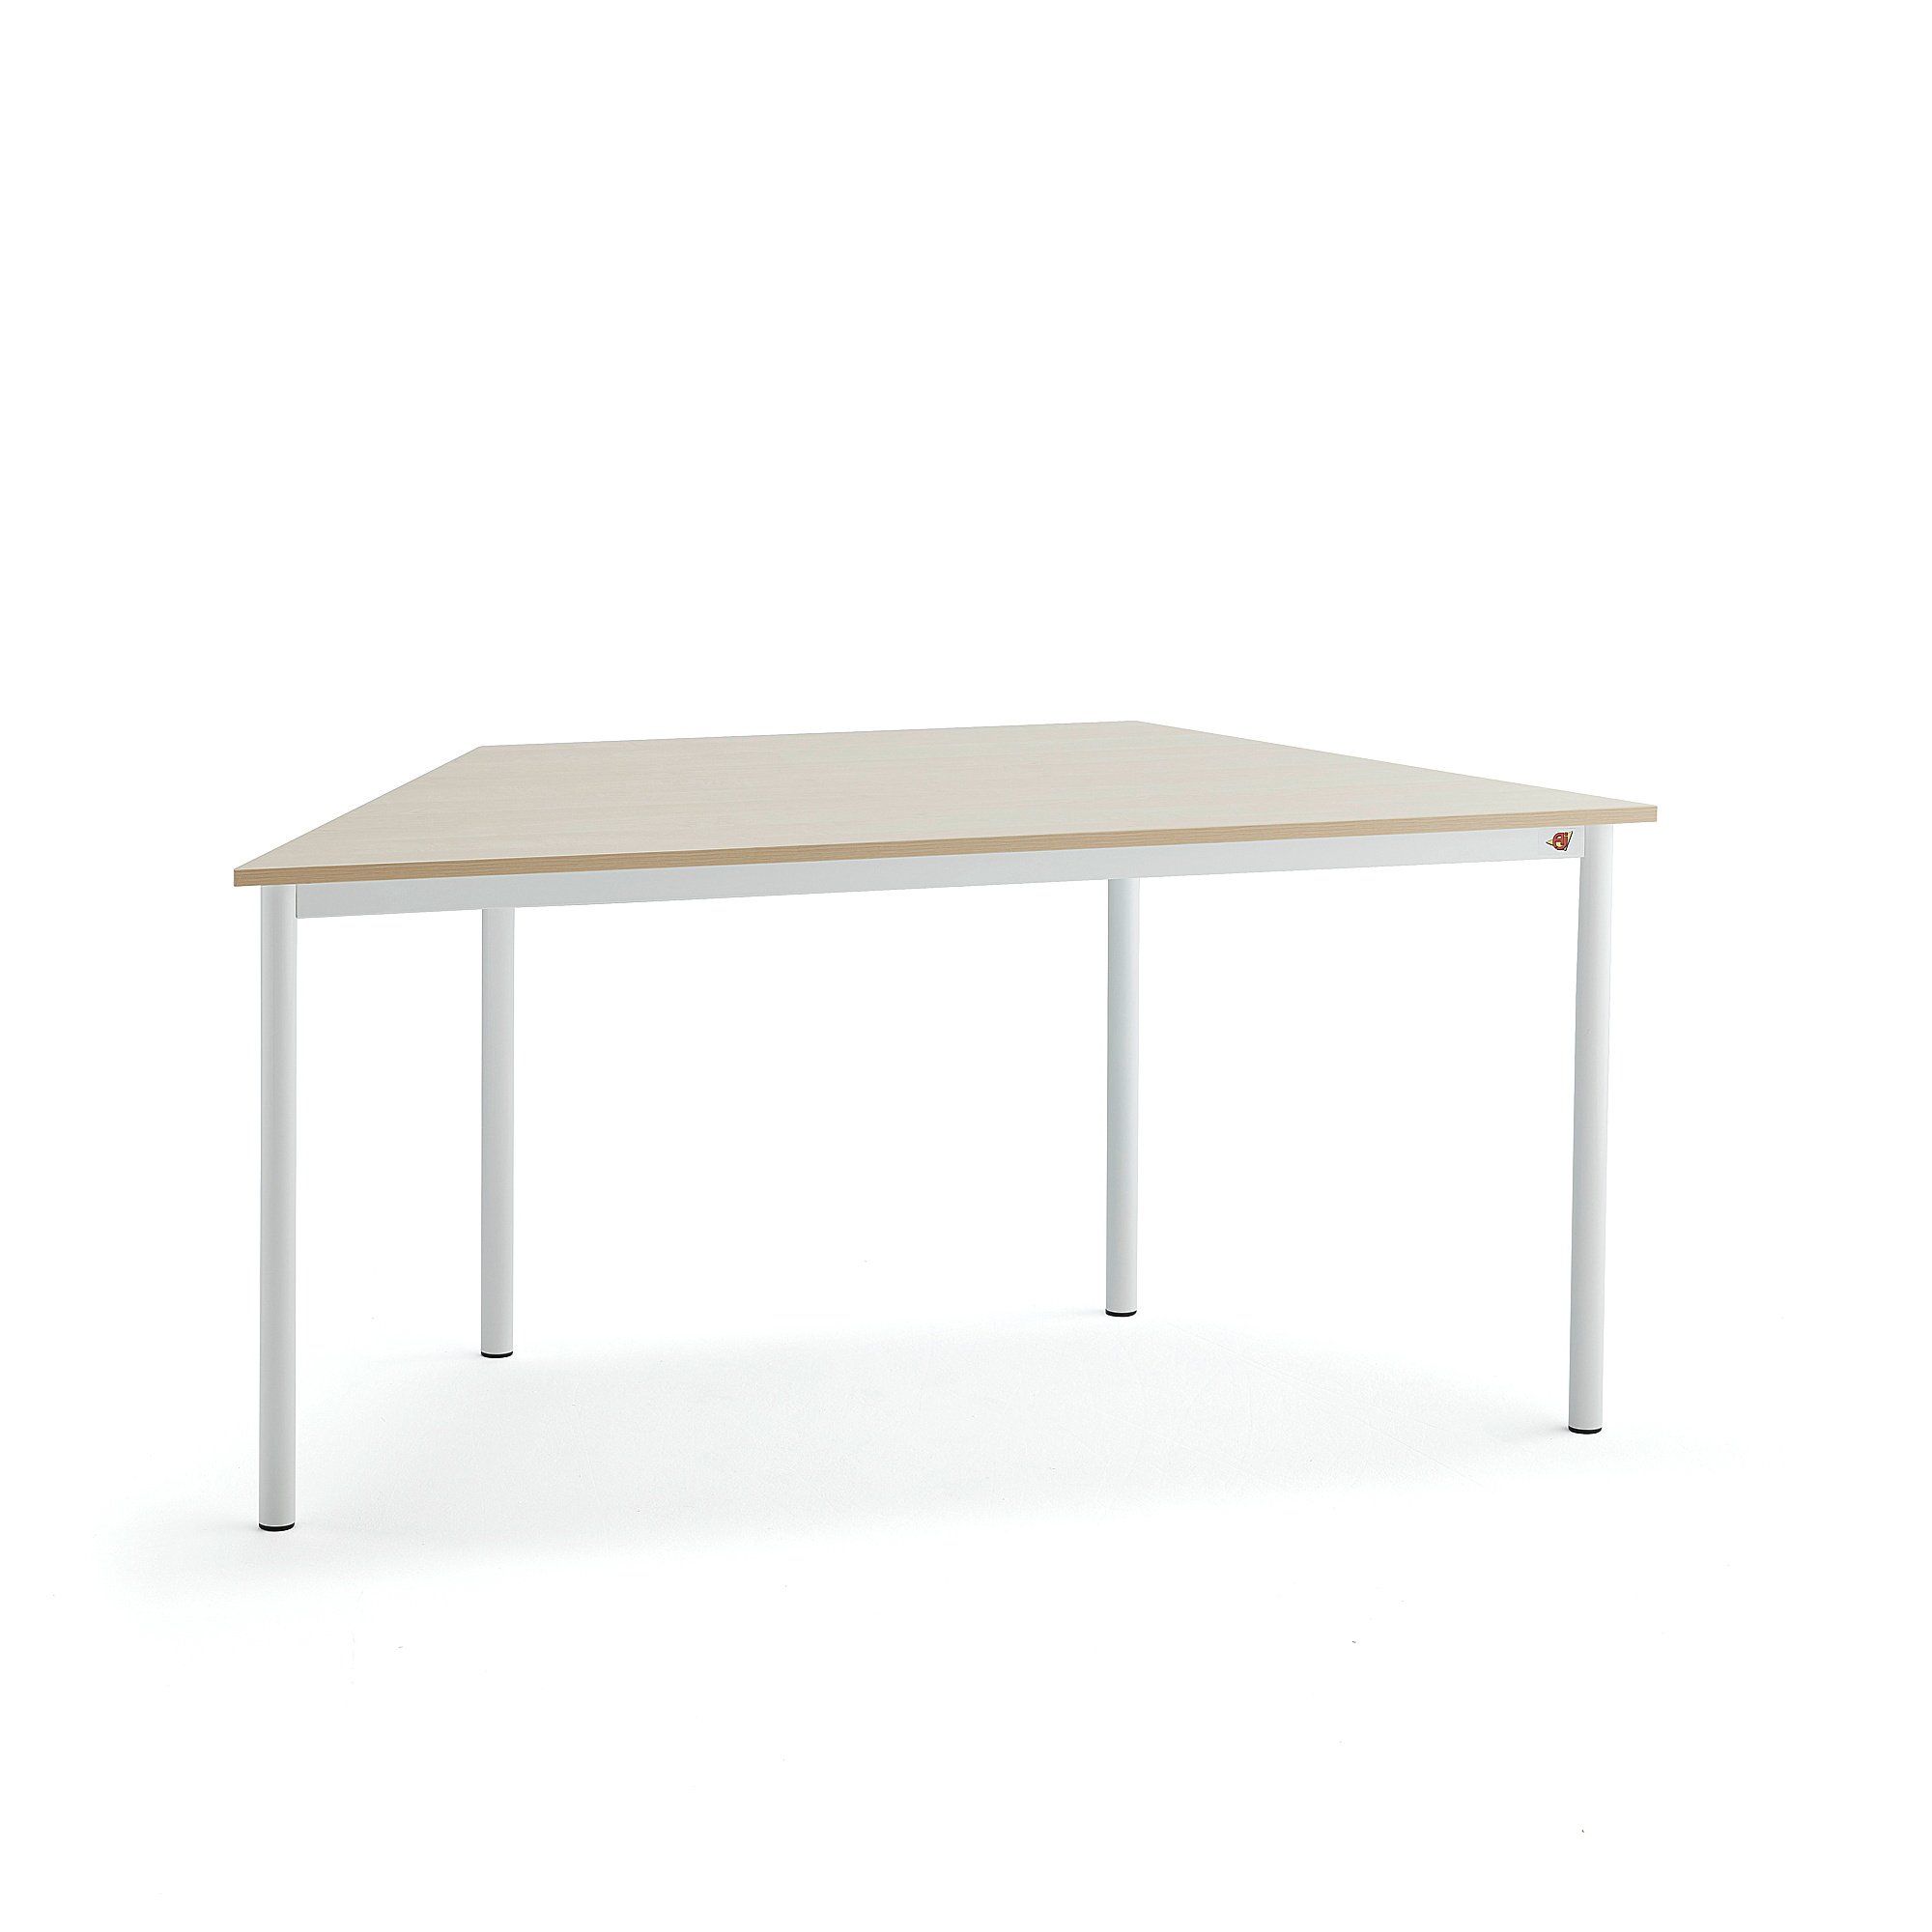 Stůl SONITUS TRAPETS, 1600x800x720 mm, bílé nohy, HPL deska tlumící hluk, bříza